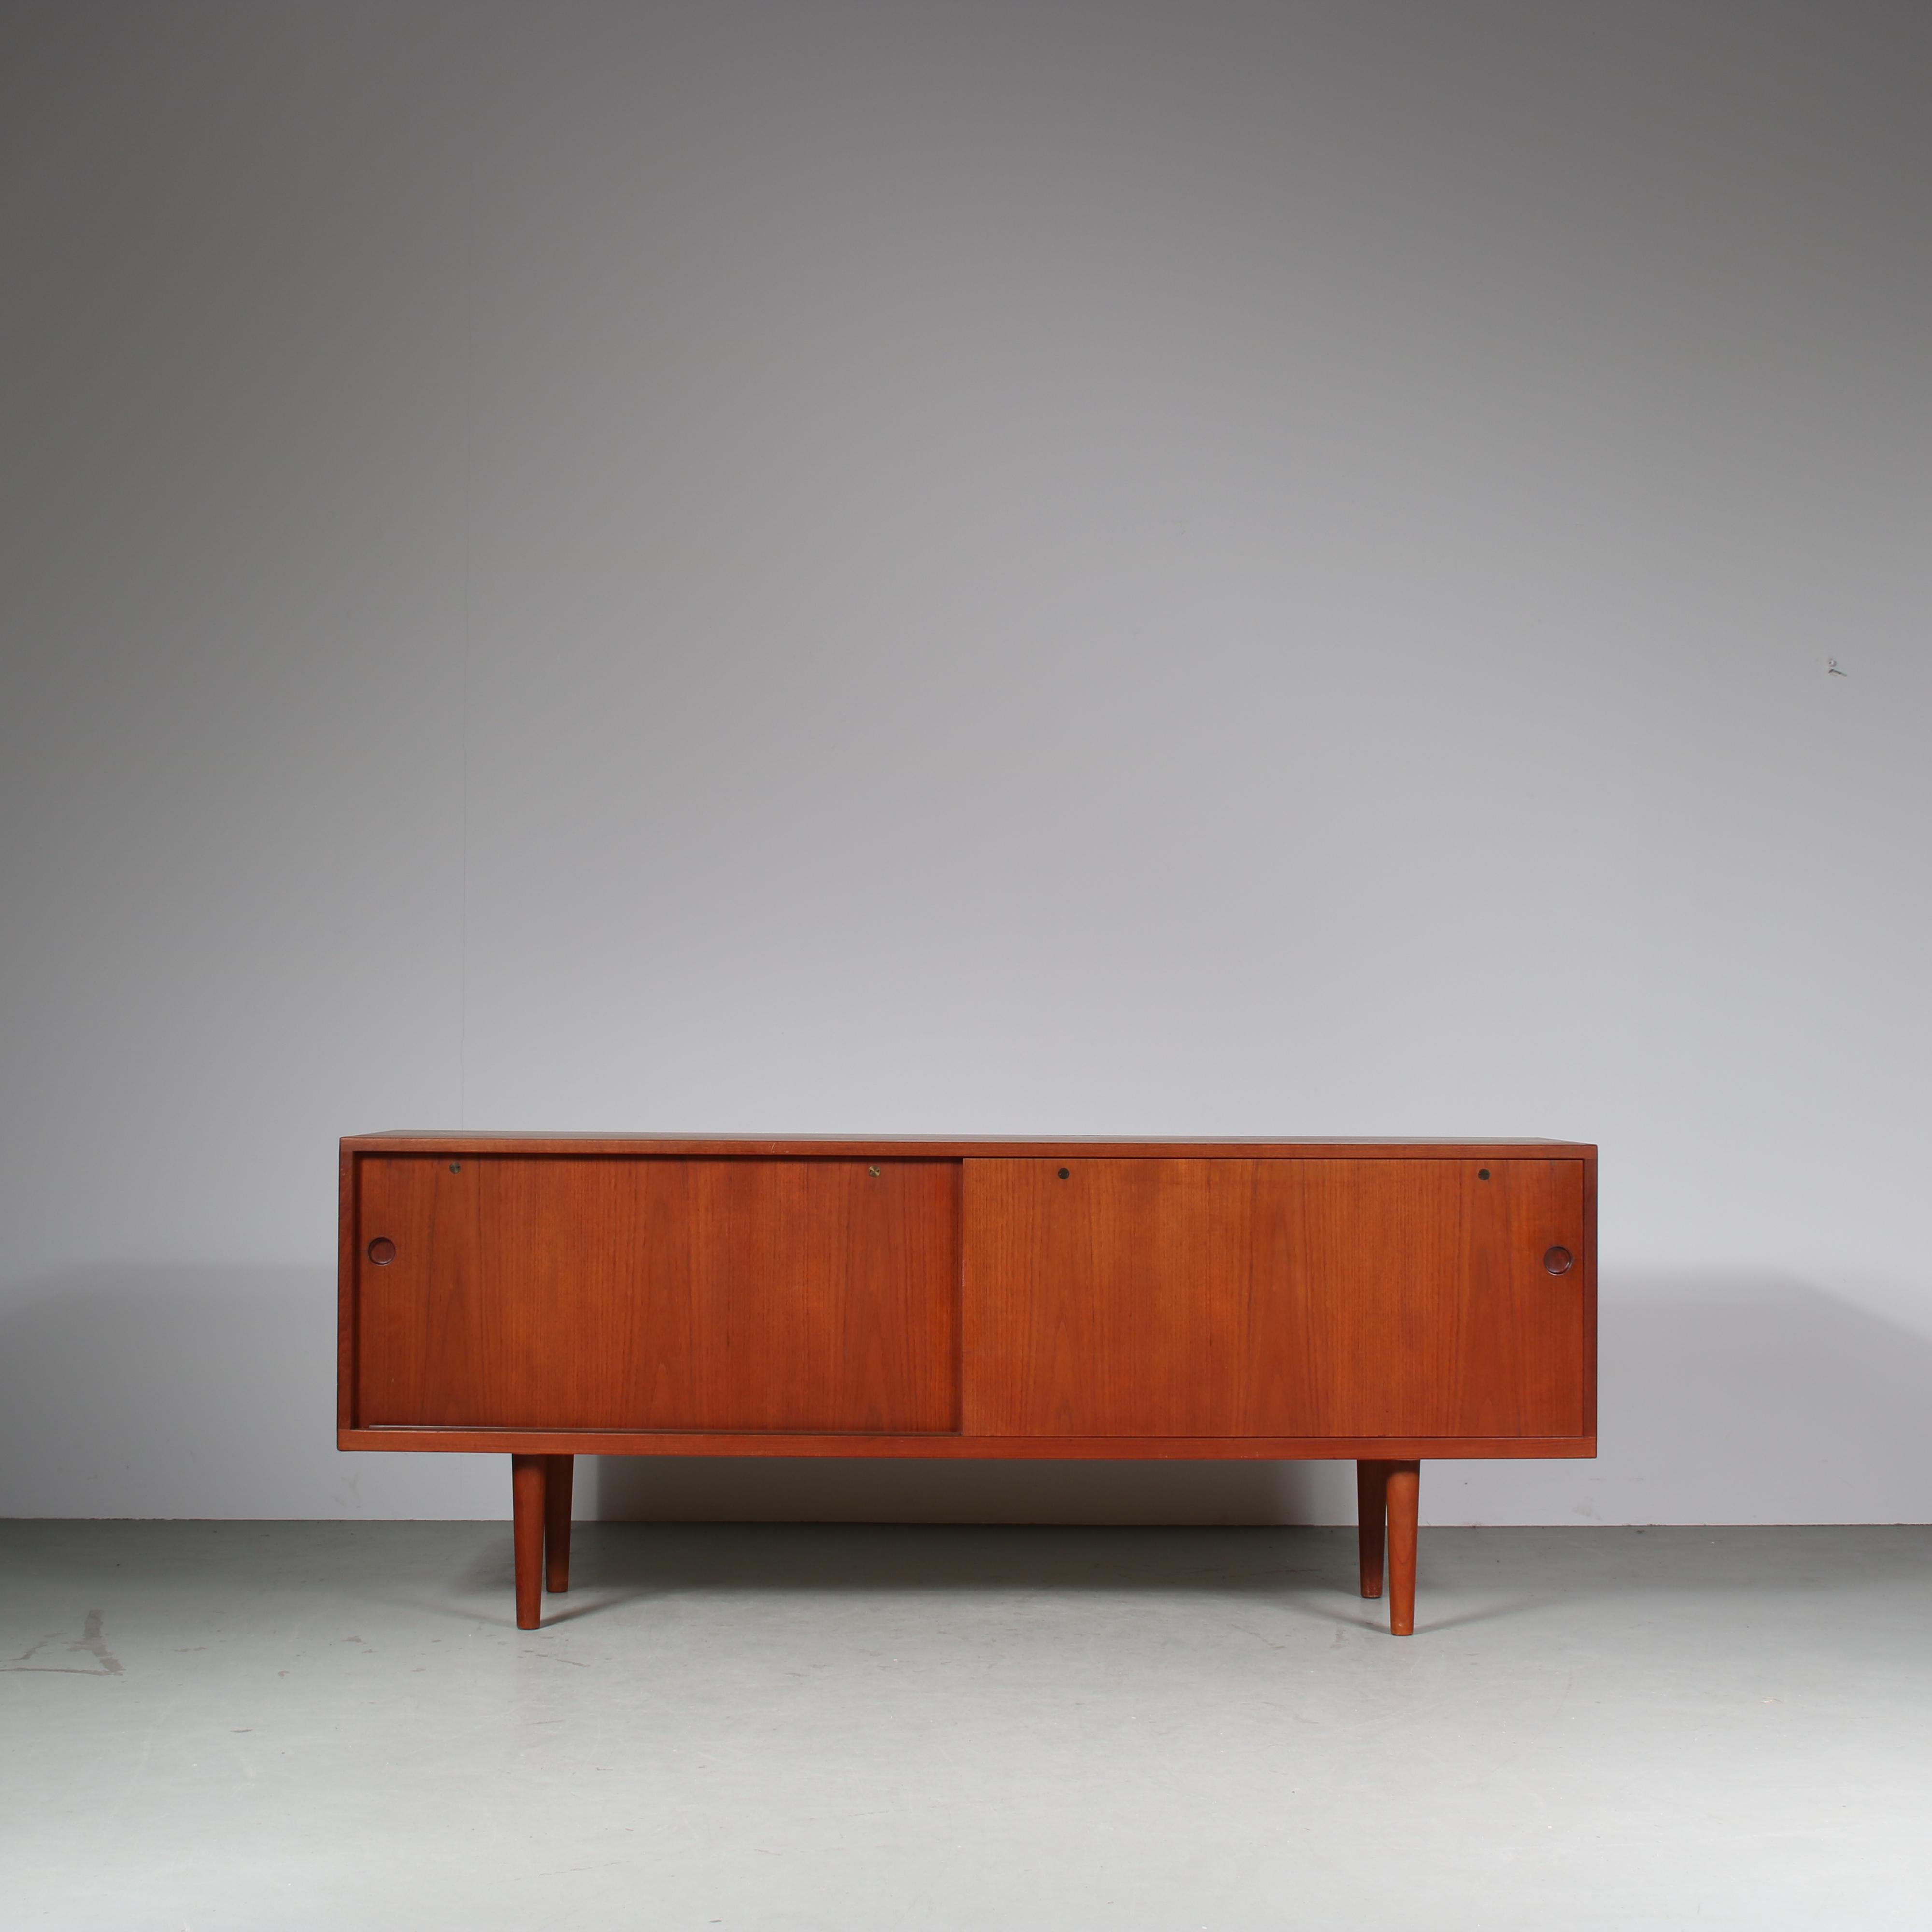 Un beau buffet, modèle 26, conçu par Hans J. Wegner, fabriqué par RY Mobler au Danemark vers 1960.

Cette pièce attrayante présente un style minimaliste et moderne. Fabriqué en bois de teck de haute qualité, d'un brun chaud, de forme rectangulaire